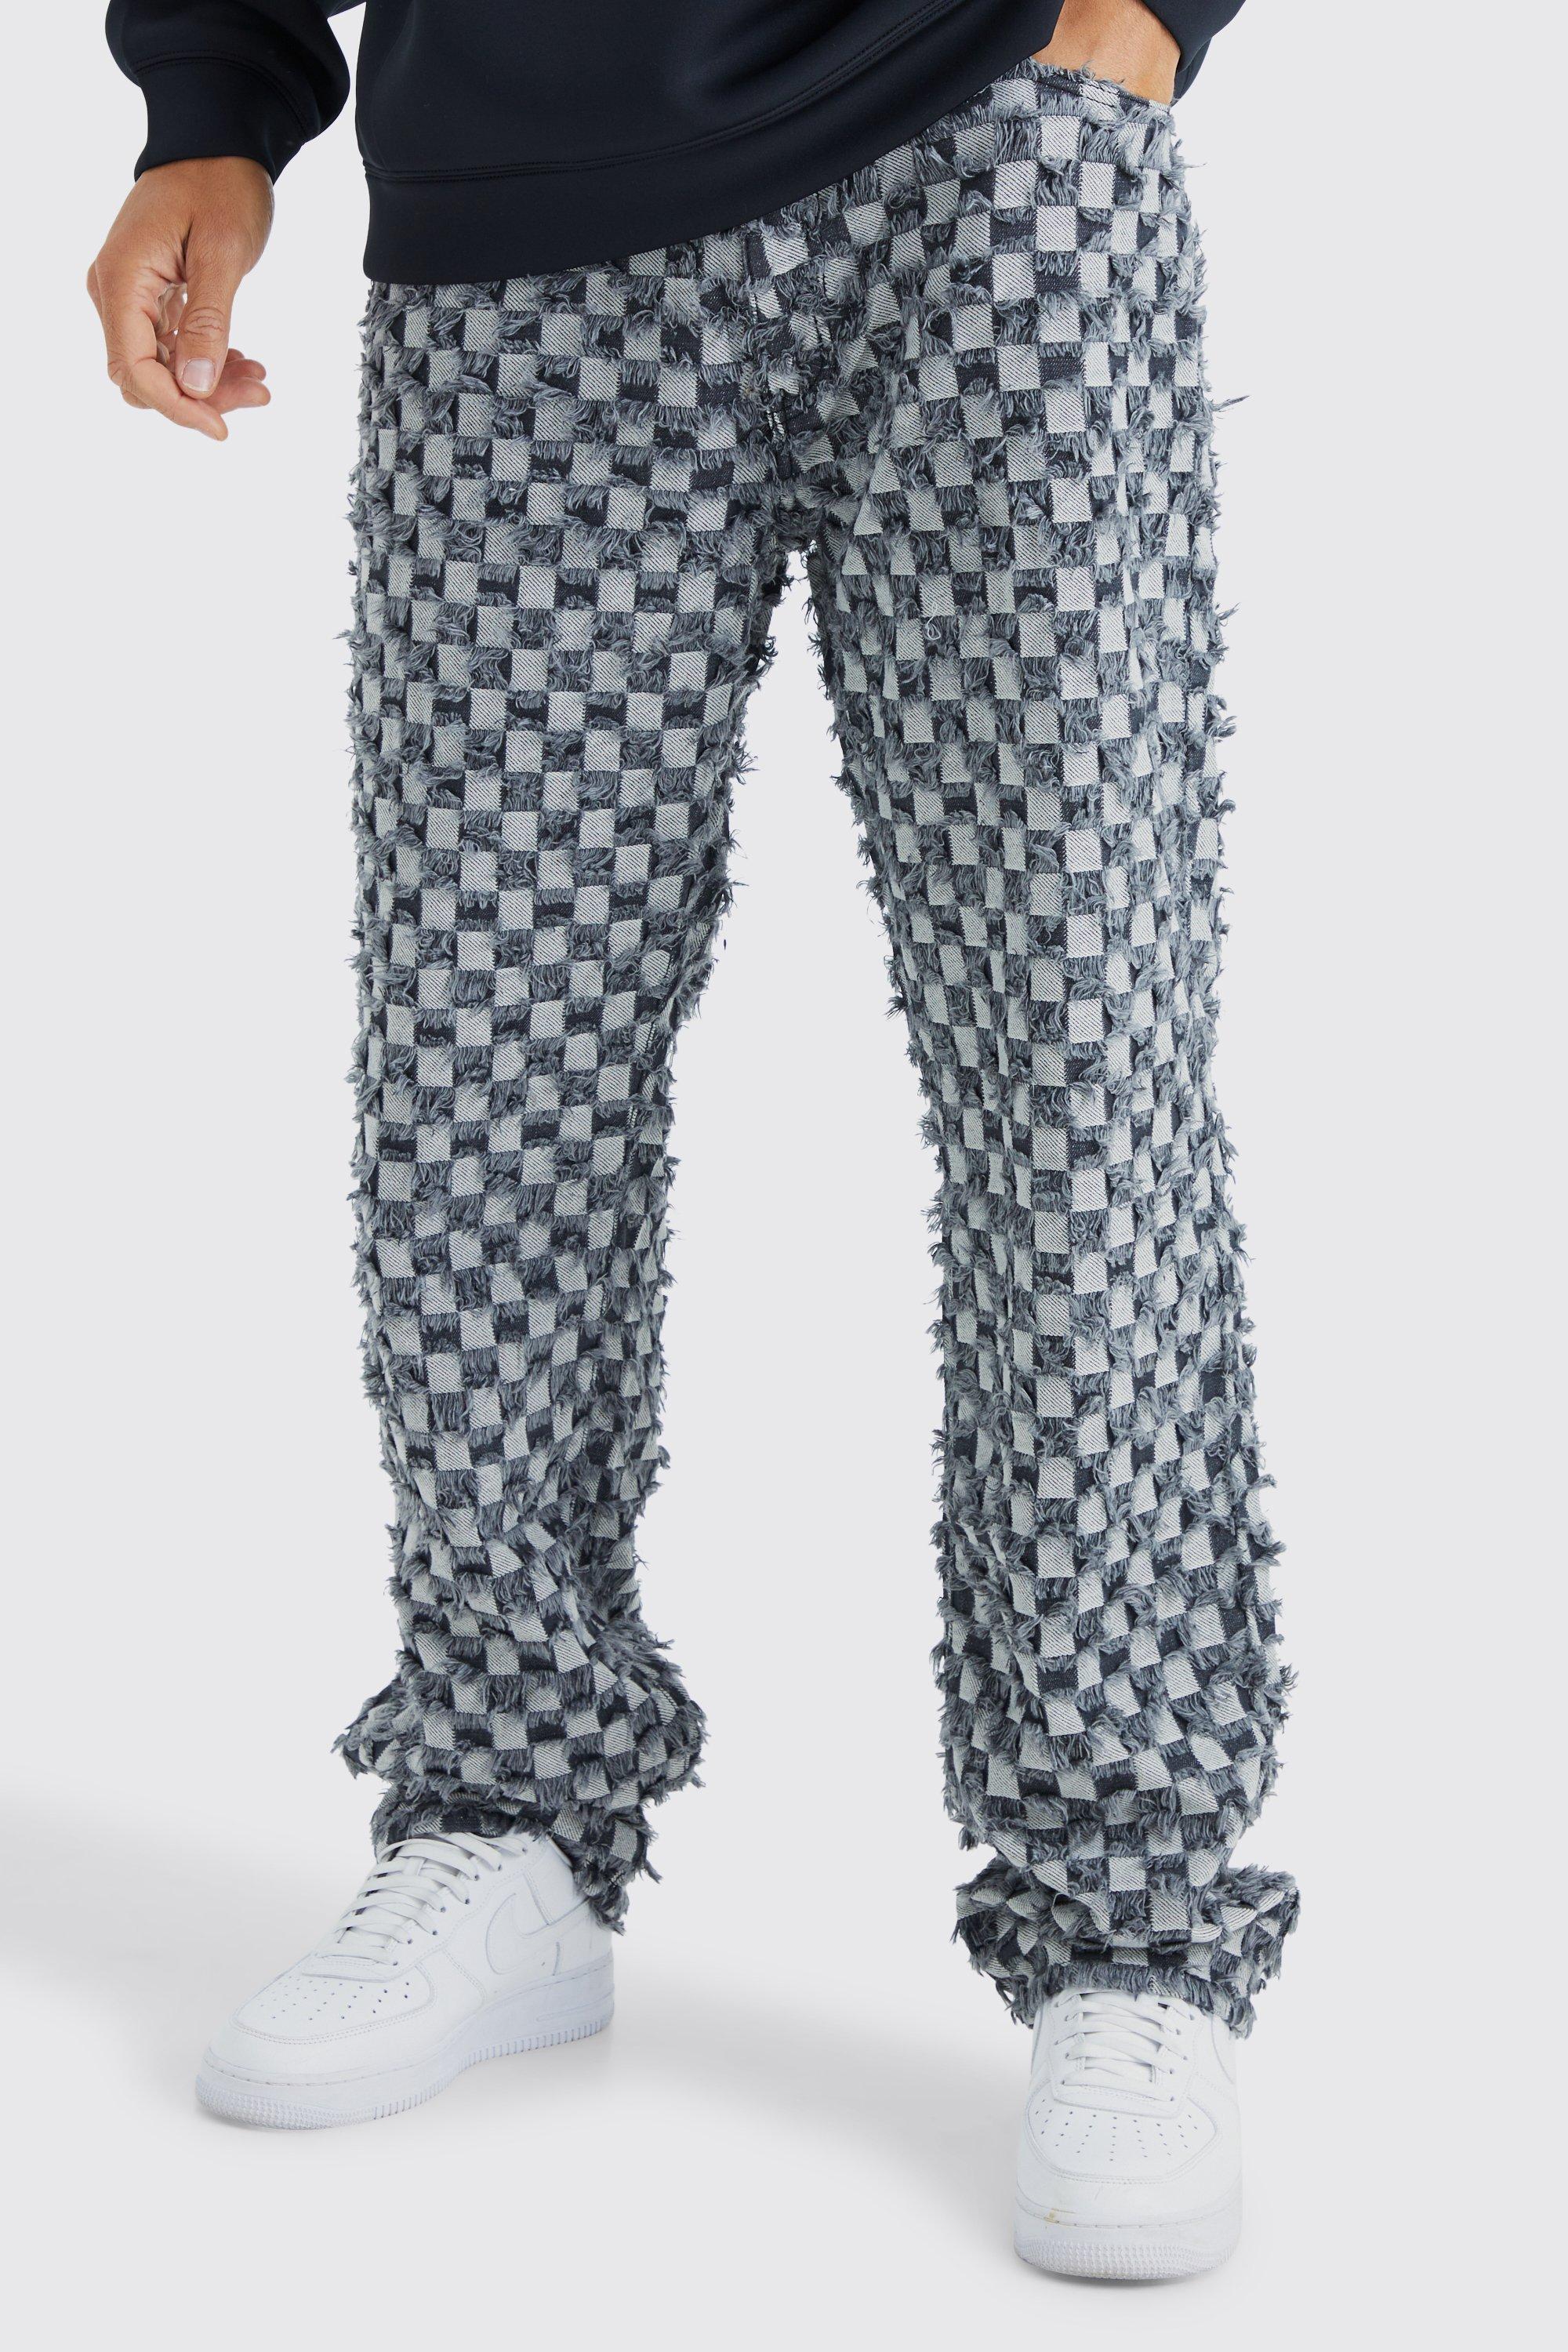 tall - pantalon large à carreaux homme - gris - 40, gris